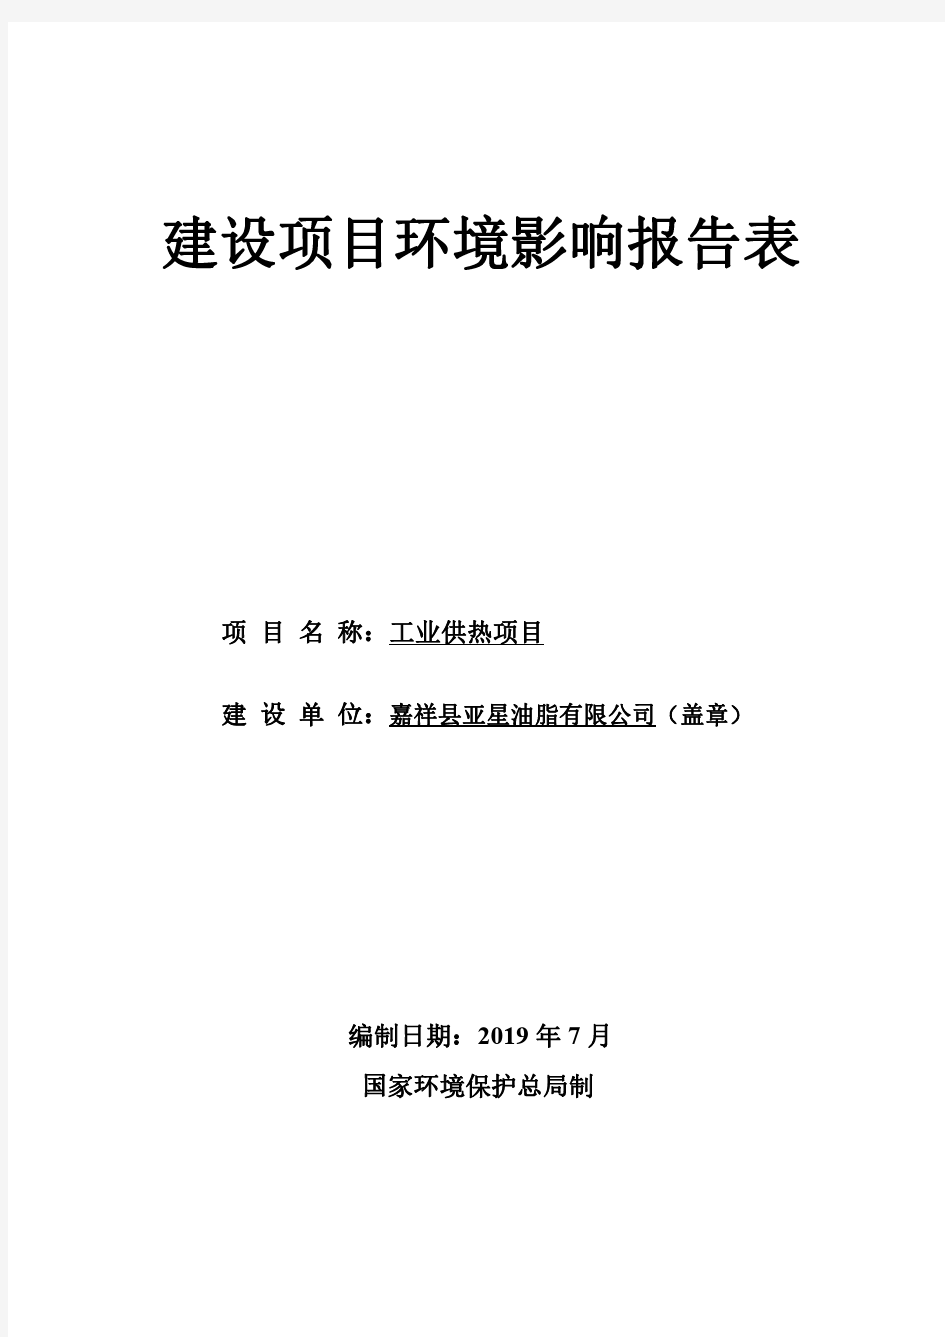 嘉祥县亚星油脂有限公司工业供热项目环境影响报告表